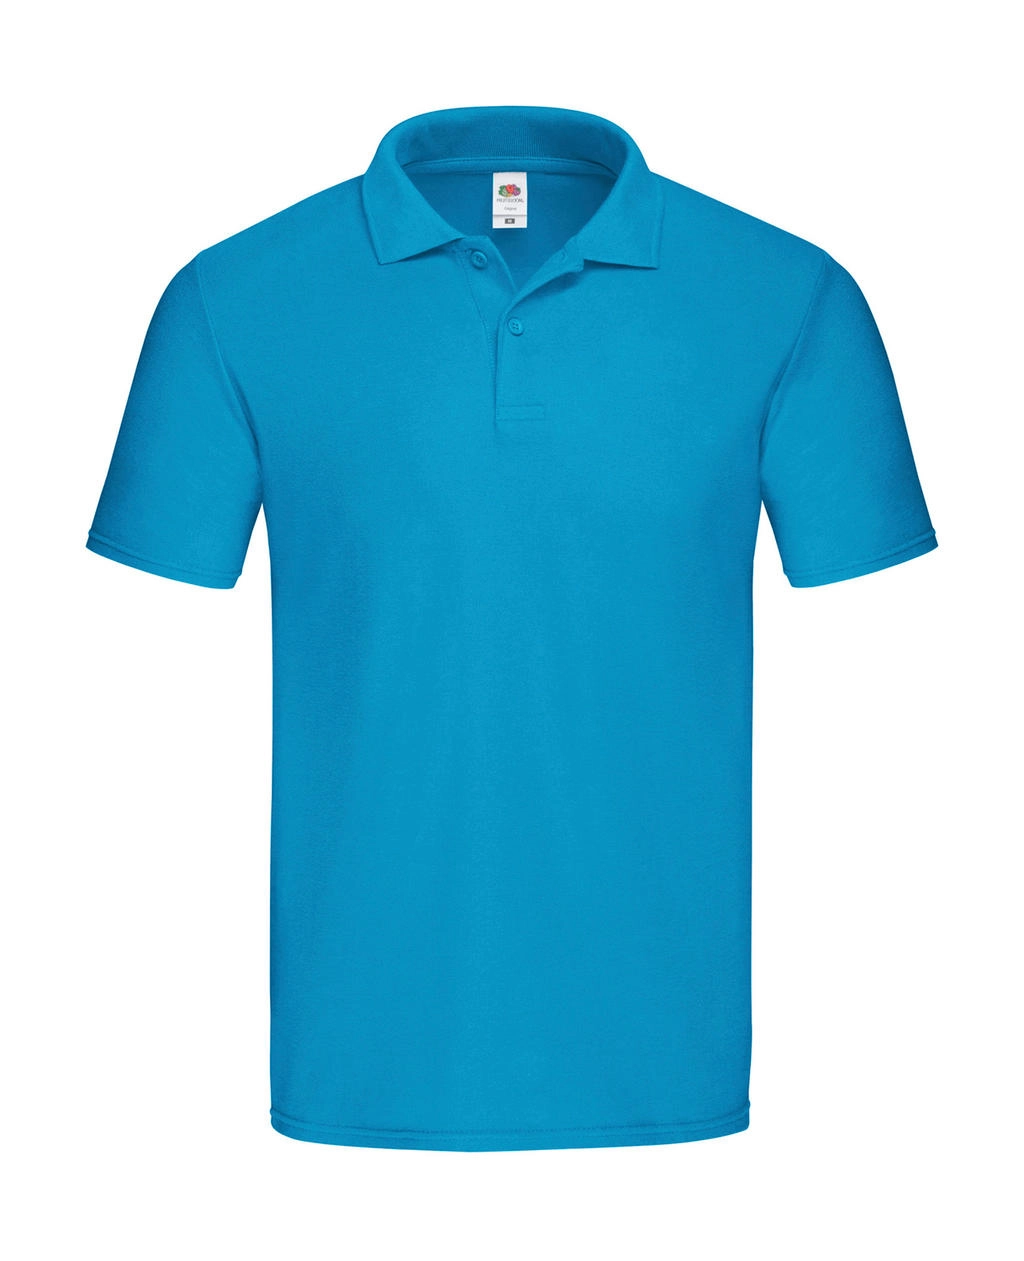 Original Polo zum Besticken und Bedrucken in der Farbe Azure Blue mit Ihren Logo, Schriftzug oder Motiv.